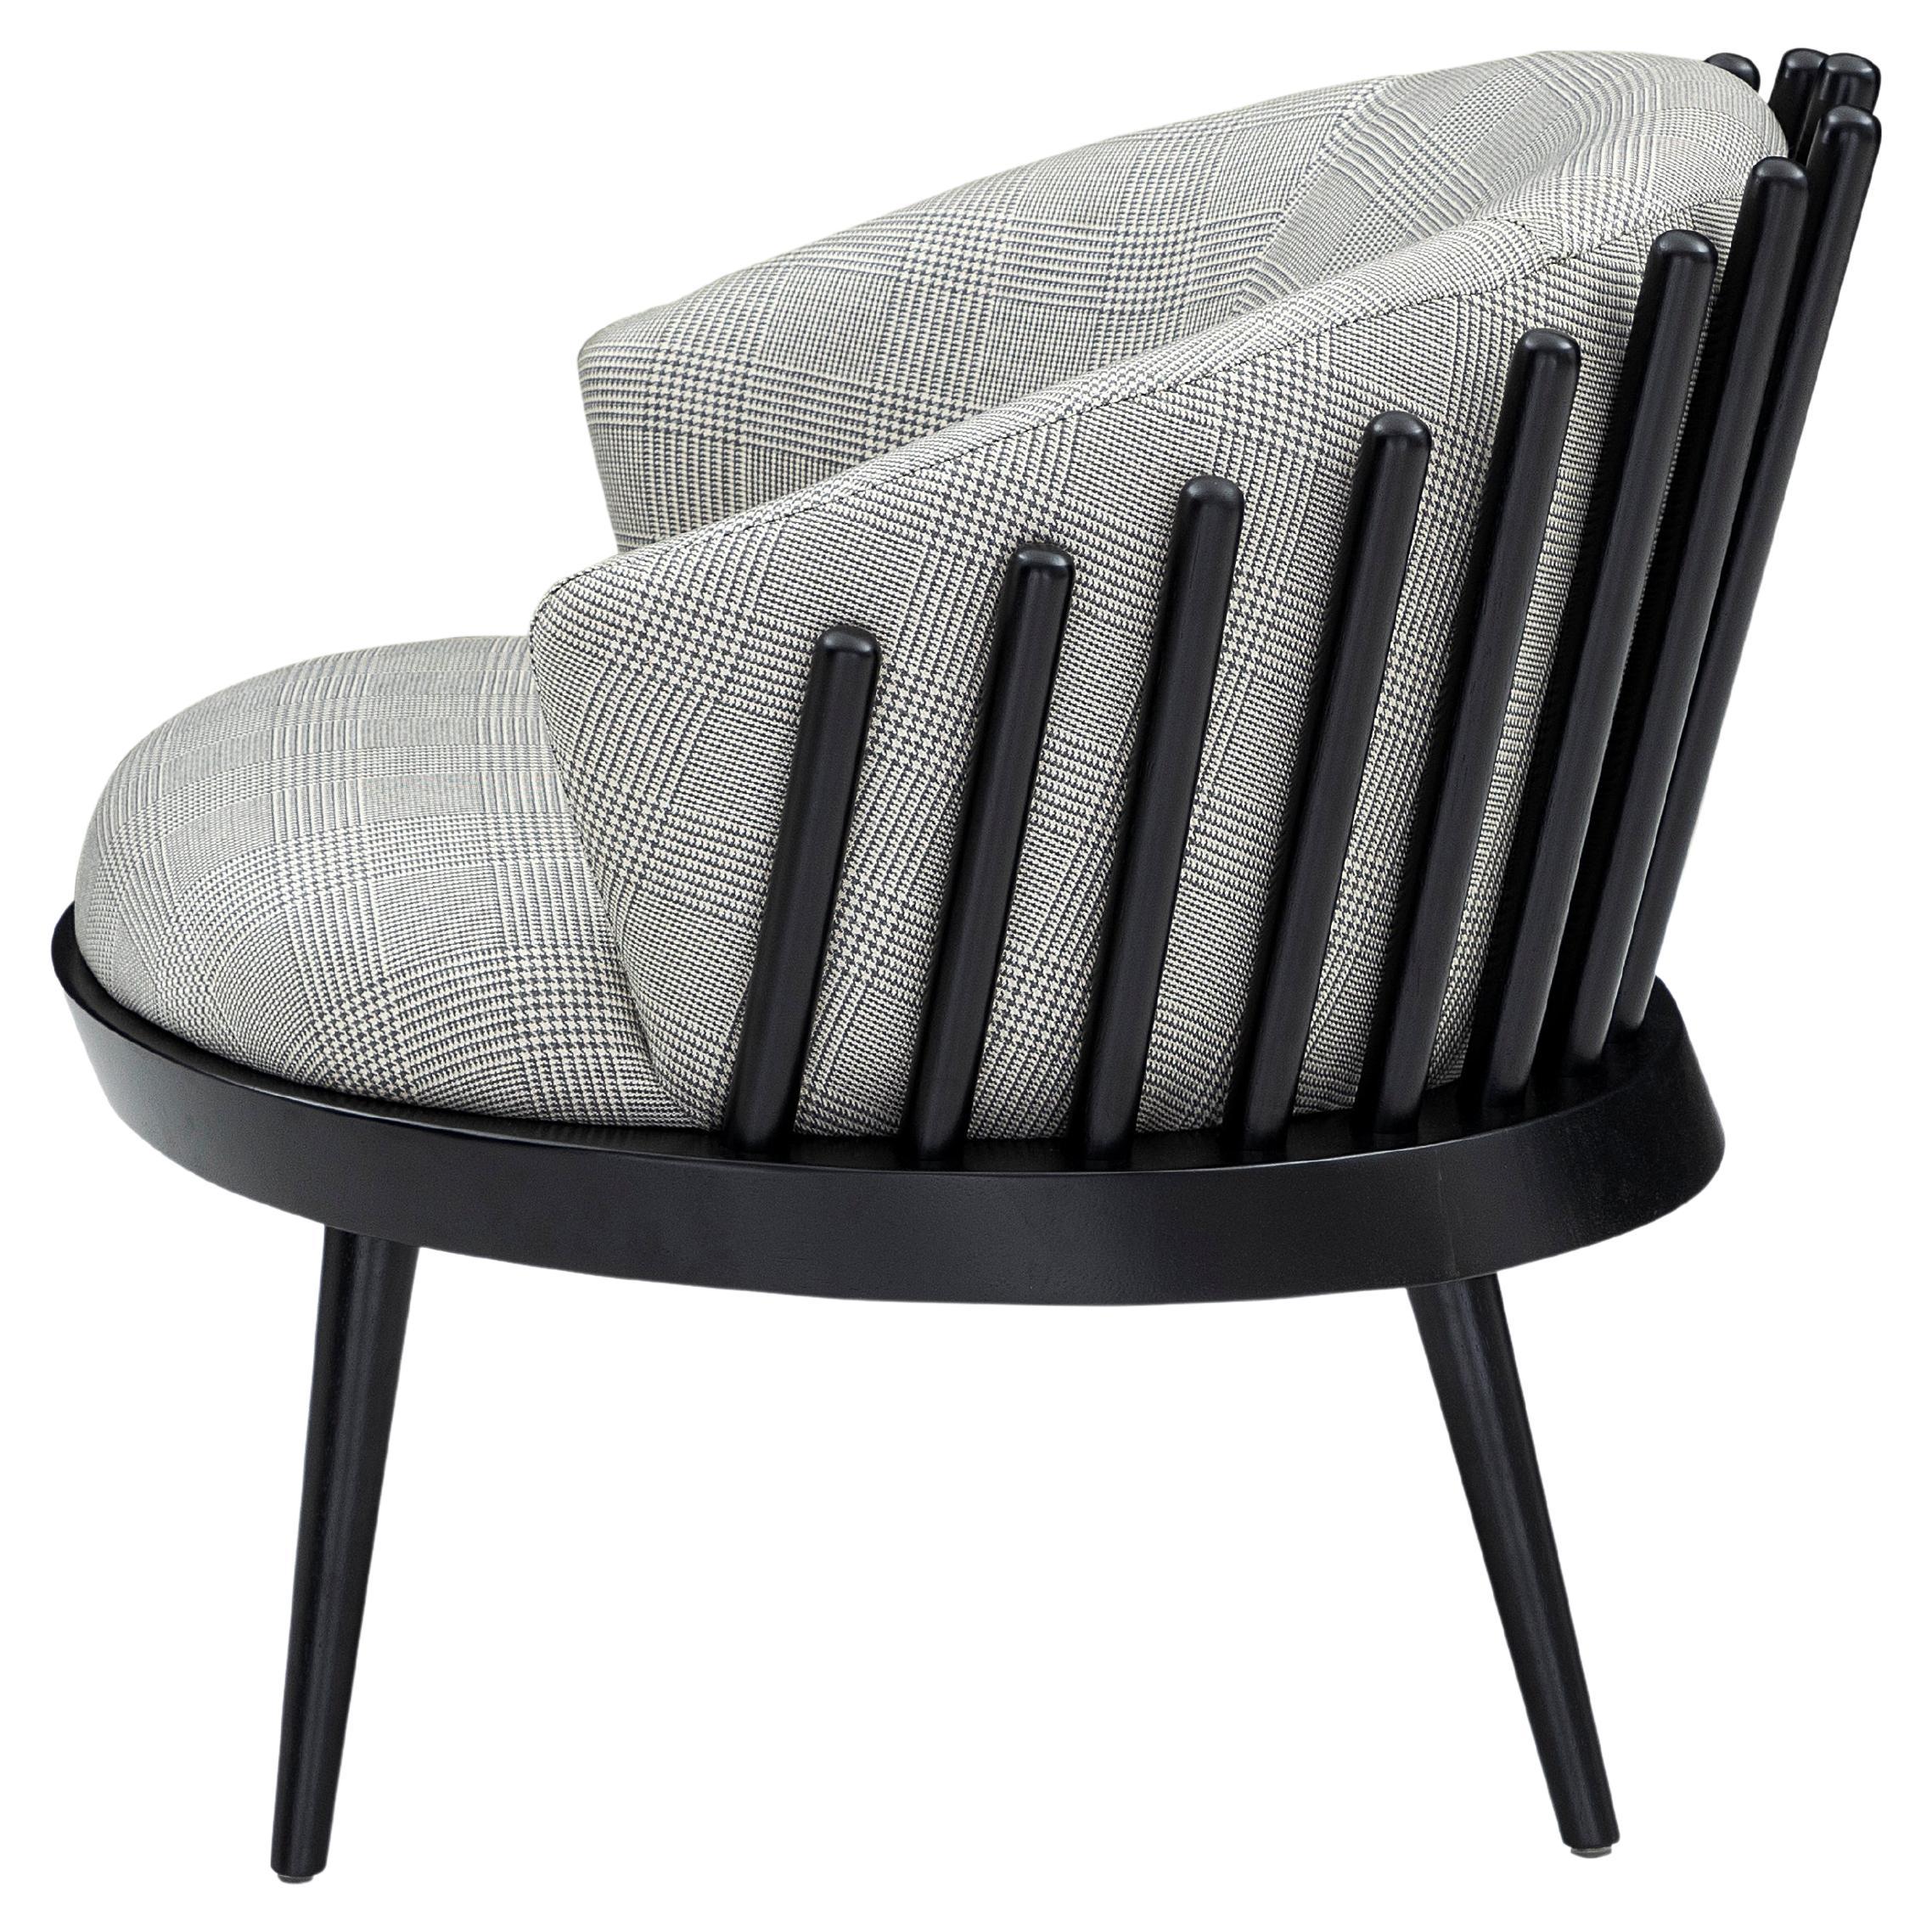 L'équipe de designers d'Uultis a créé ce magnifique fauteuil Fane, revêtu d'un beau tissu écossais très doux, agrémenté d'une finition en bois noir. Cette magnifique création offrira un espace confortable parfait avec son assise et son dossier